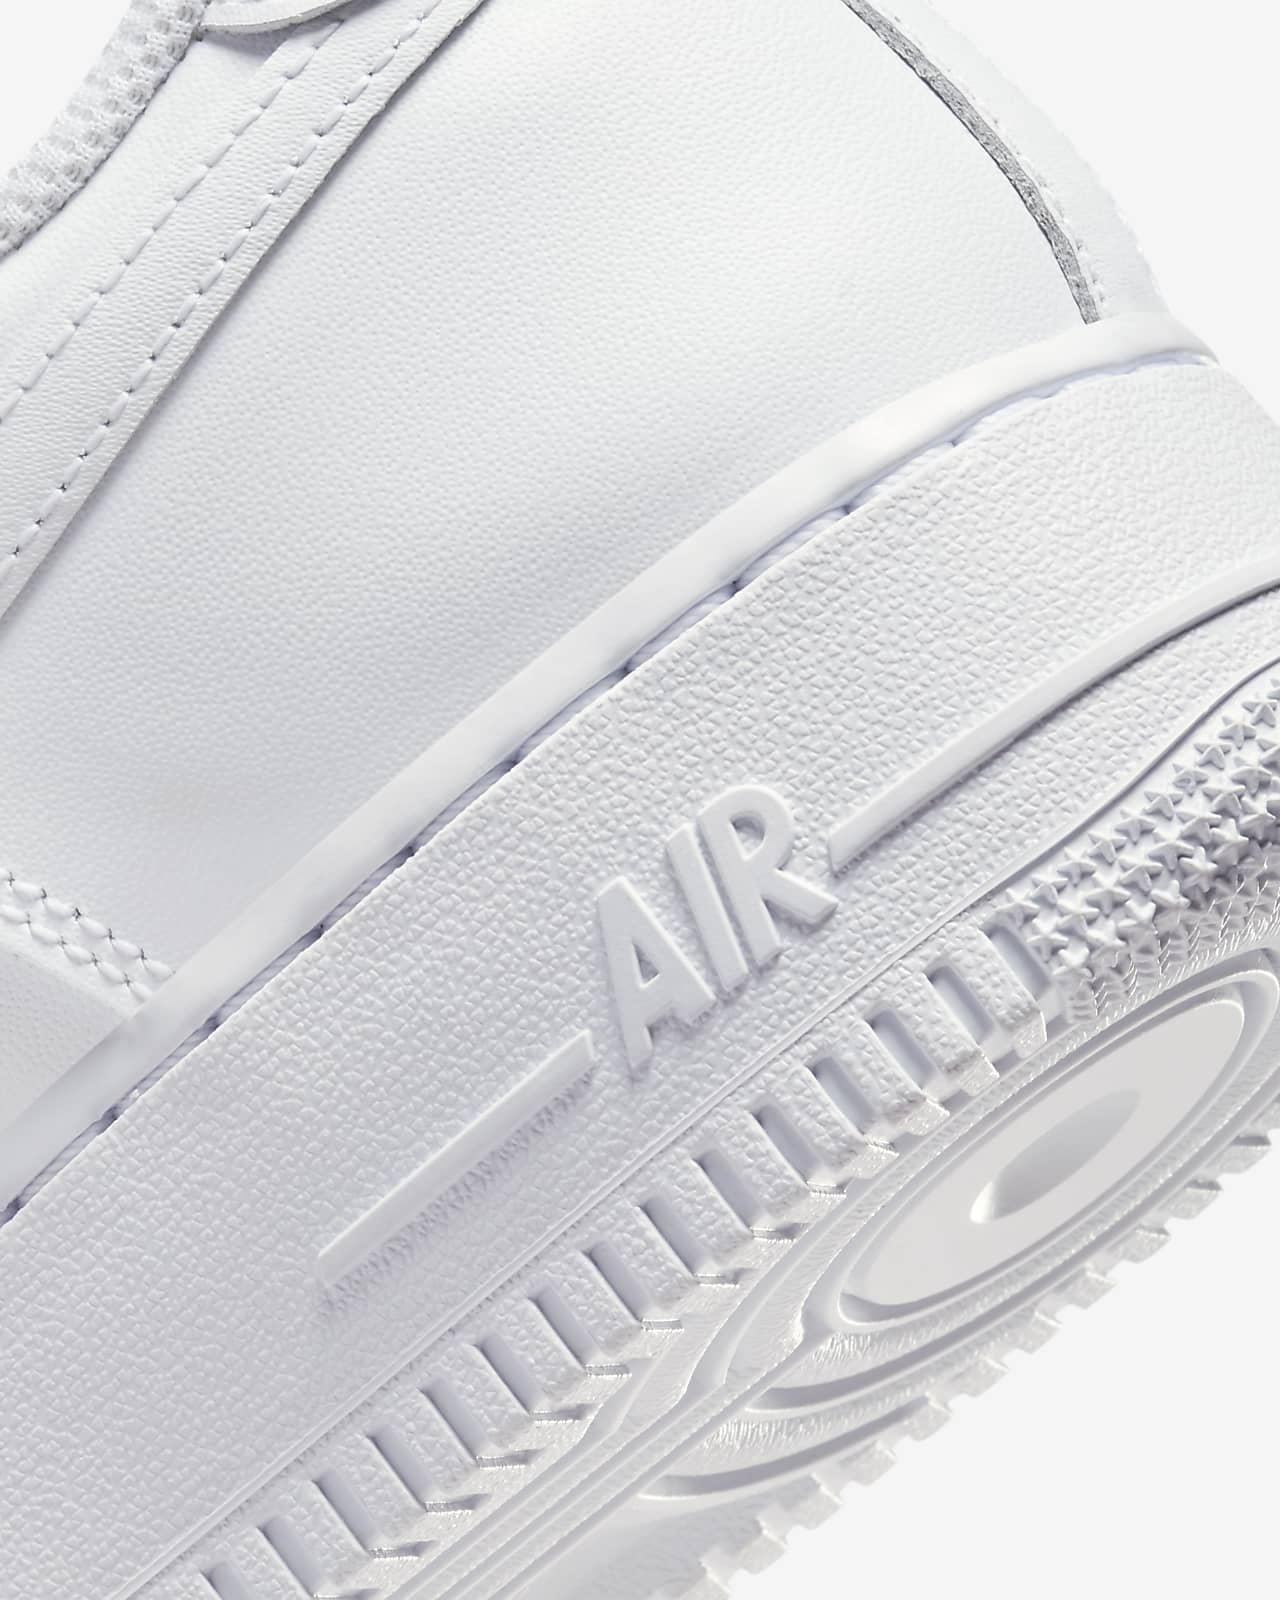 La zapatilla Nike Air Force 1 se reinventa ¡y brilla! de la mano